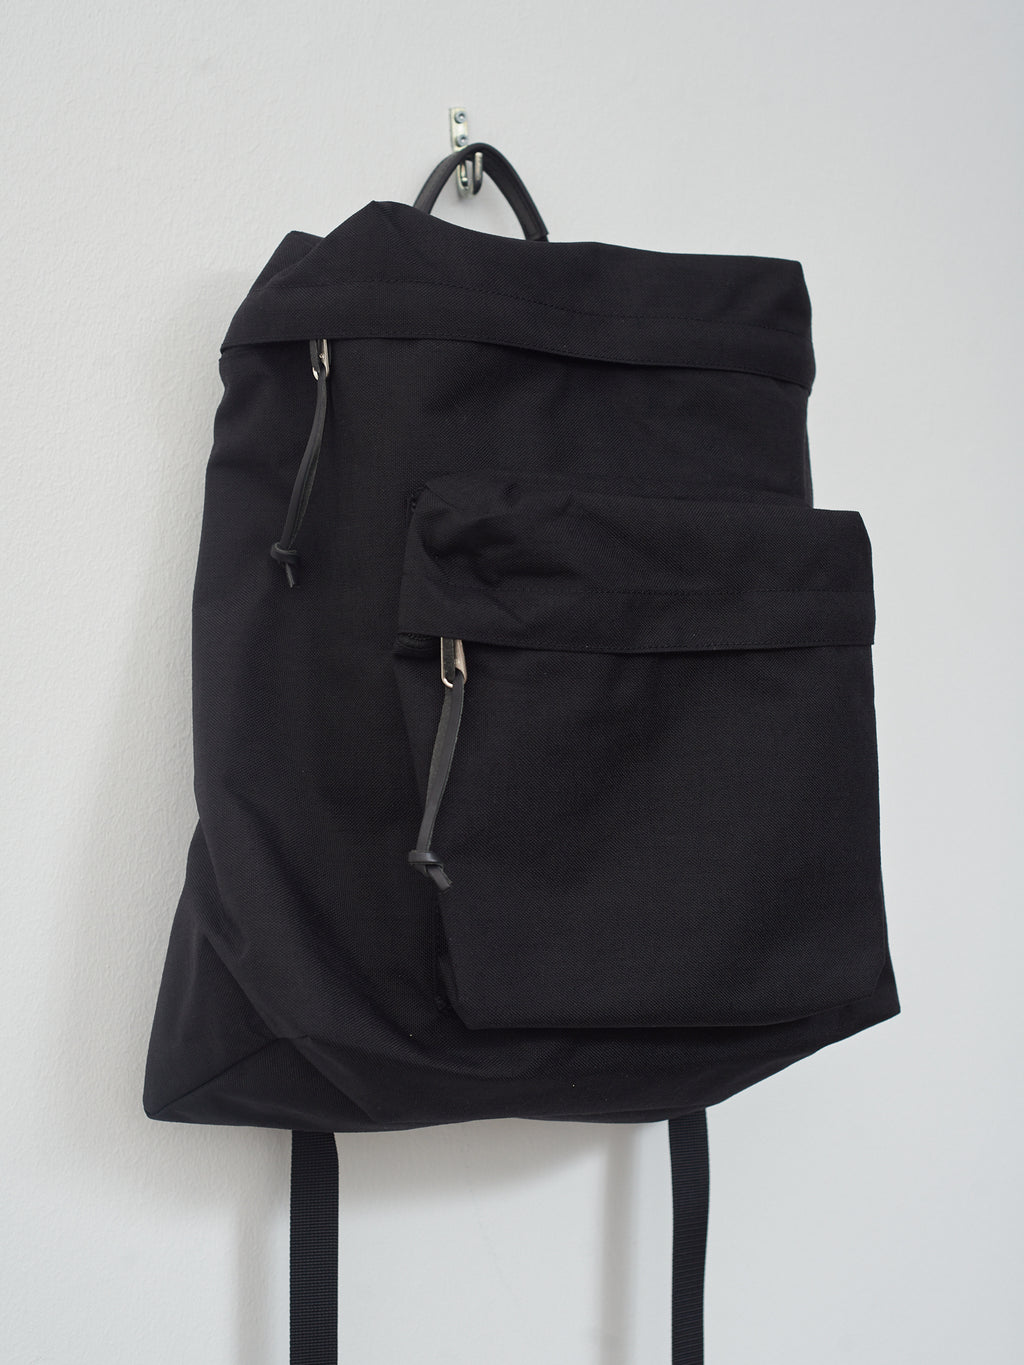 Namu Shop - Aeta Backpack TF M - Black